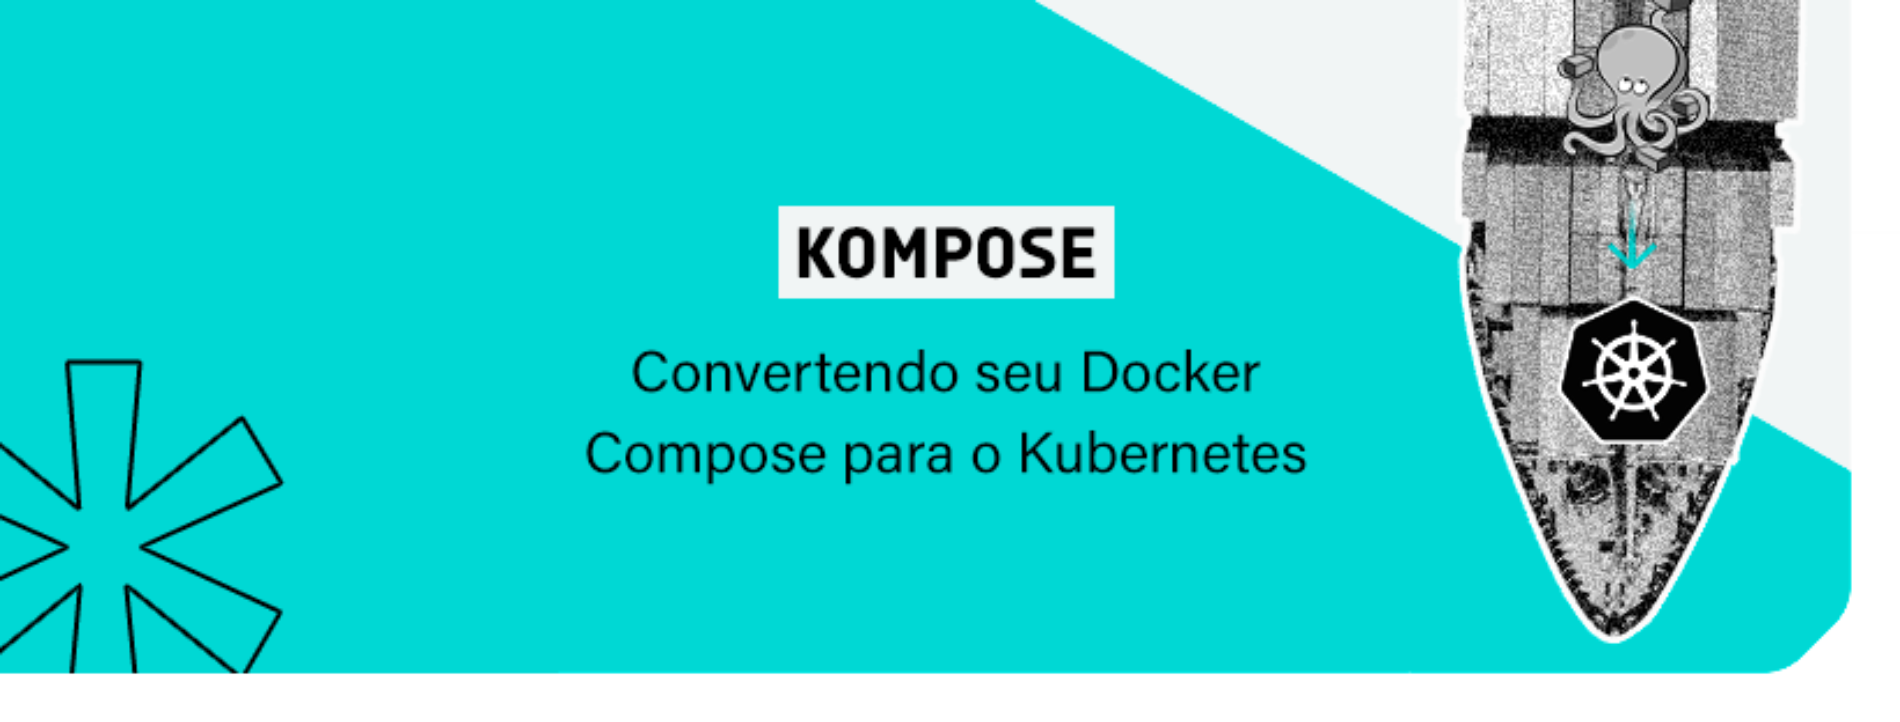 Kompose – Convertendo seu Docker Compose para o Kubernetes